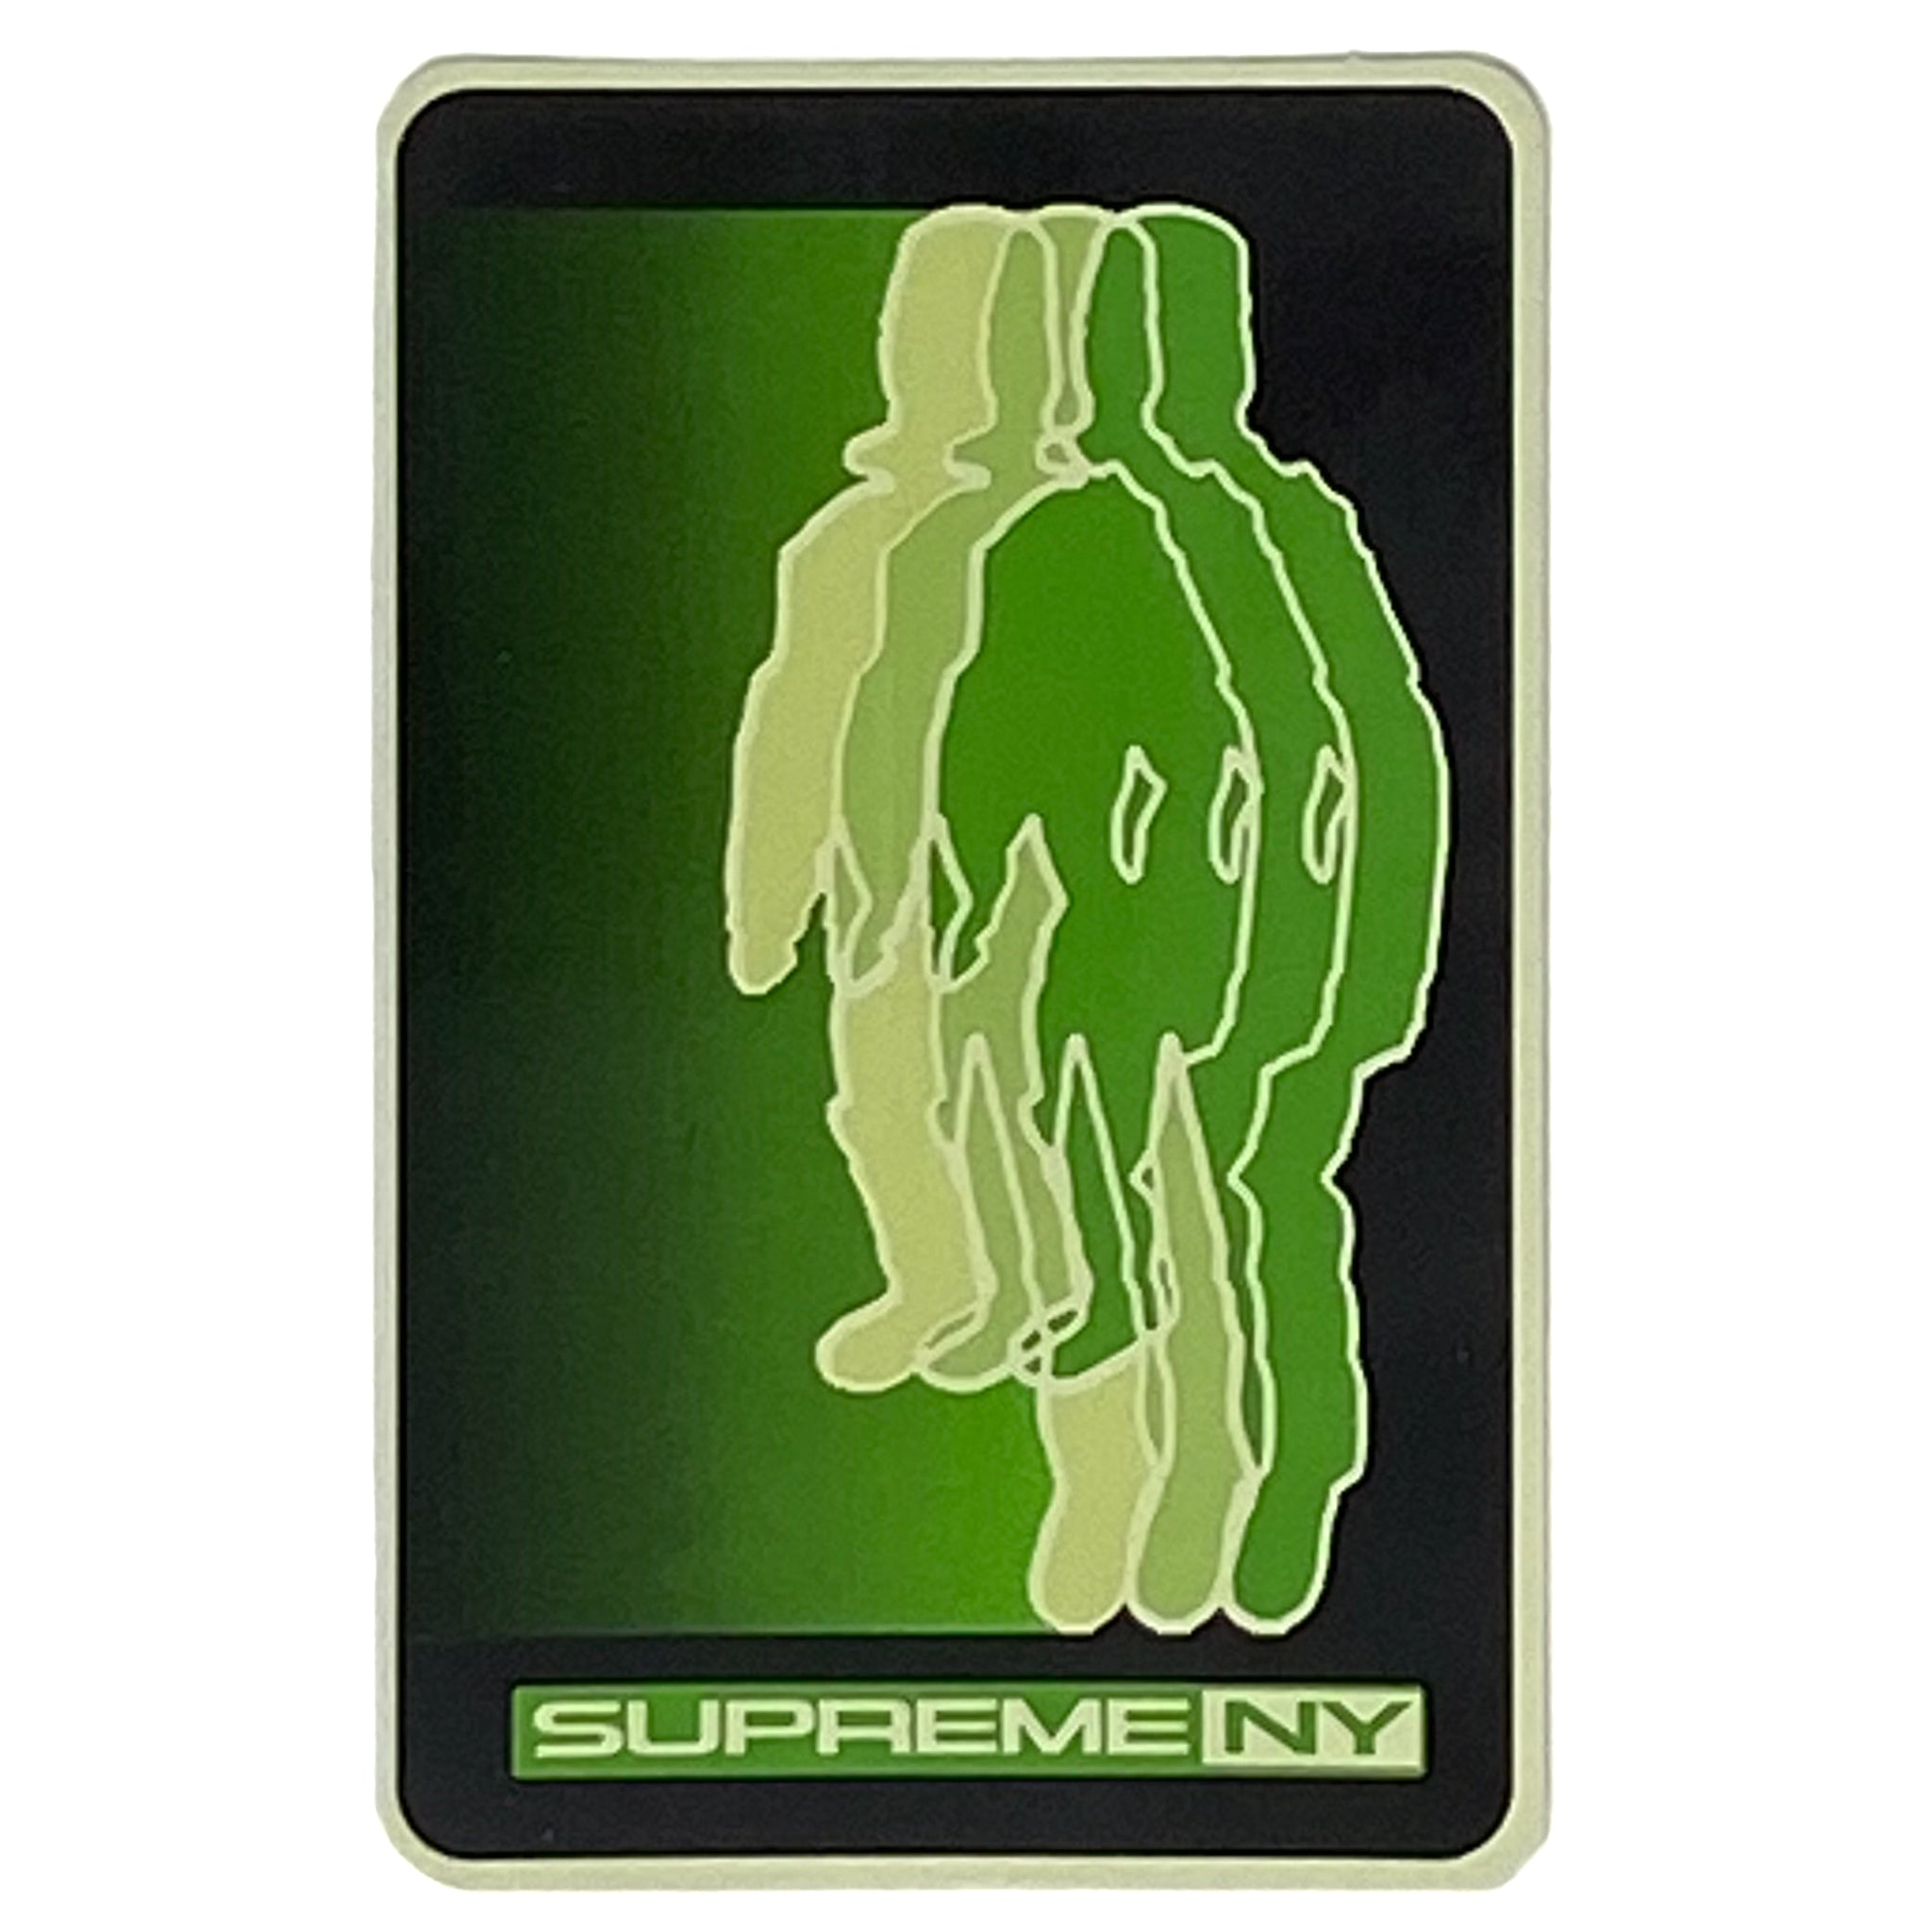 Supreme NY Blur Stickers | Fall Winter 2020 | Supreme Stickers